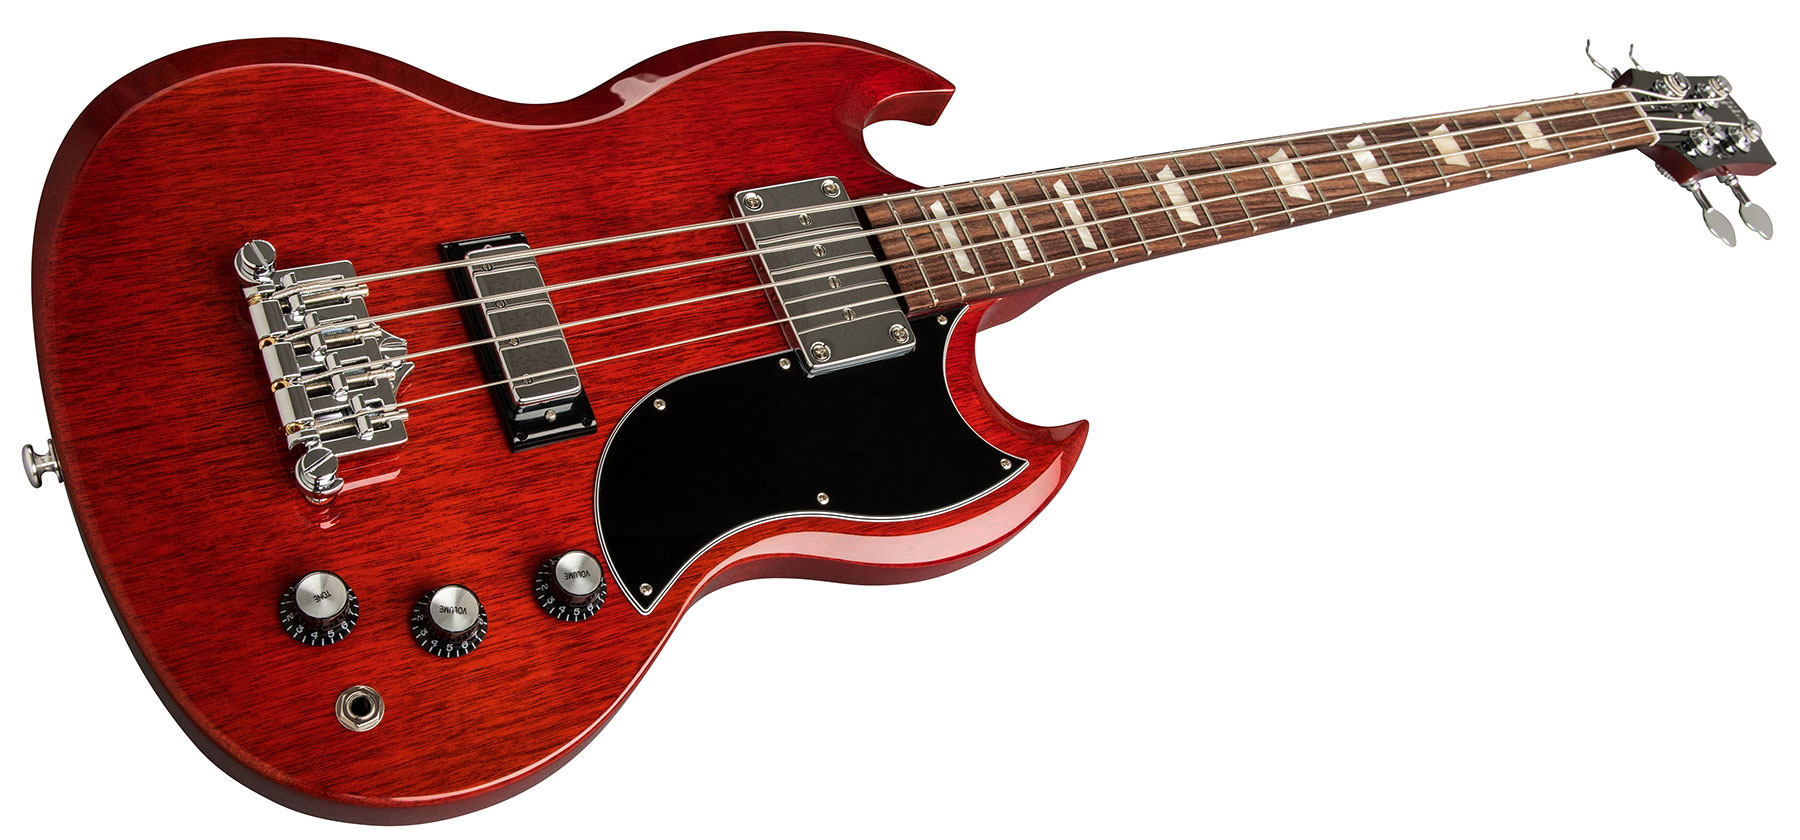 Gibson Sg Standard Bass - Heritage Cherry - Bajo eléctrico de cuerpo sólido - Variation 2